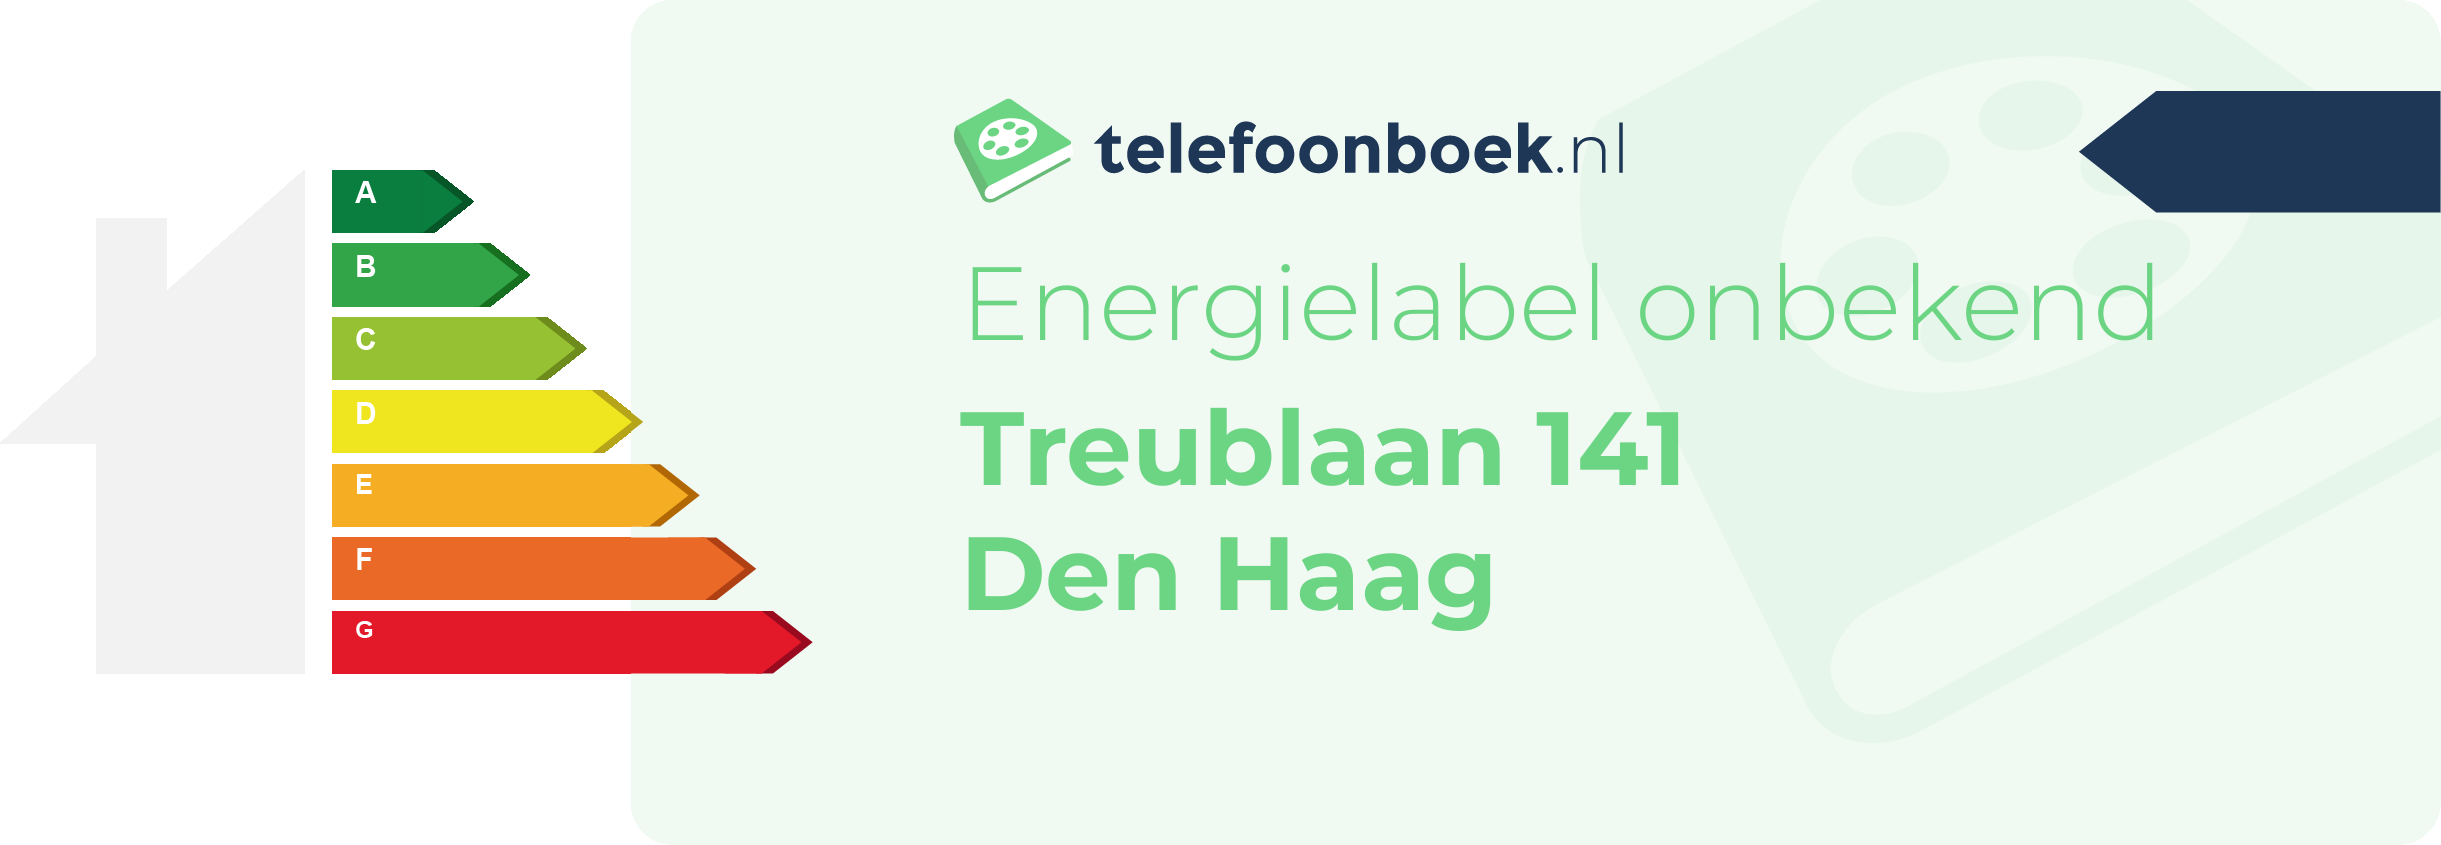 Energielabel Treublaan 141 Den Haag